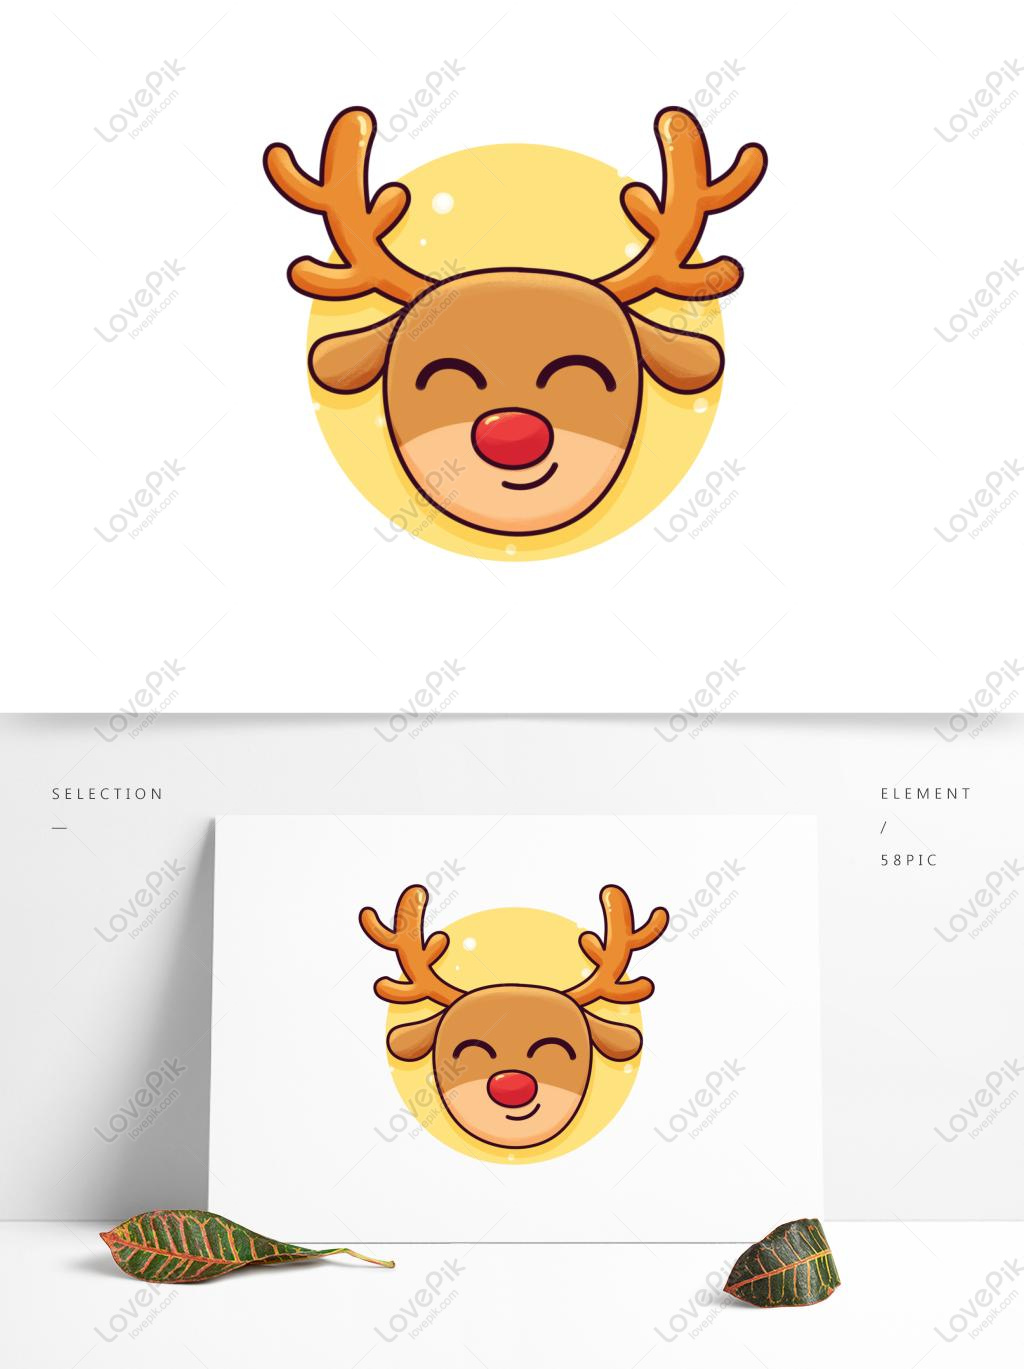 Hãy xem những bức vẽ hình cute sticker dễ thương với những biểu tượng mang tính biểu hiện cao cảm xúc. Những hình ảnh này chắc chắn sẽ làm bạn cười và cảm thấy vui vẻ hơn.